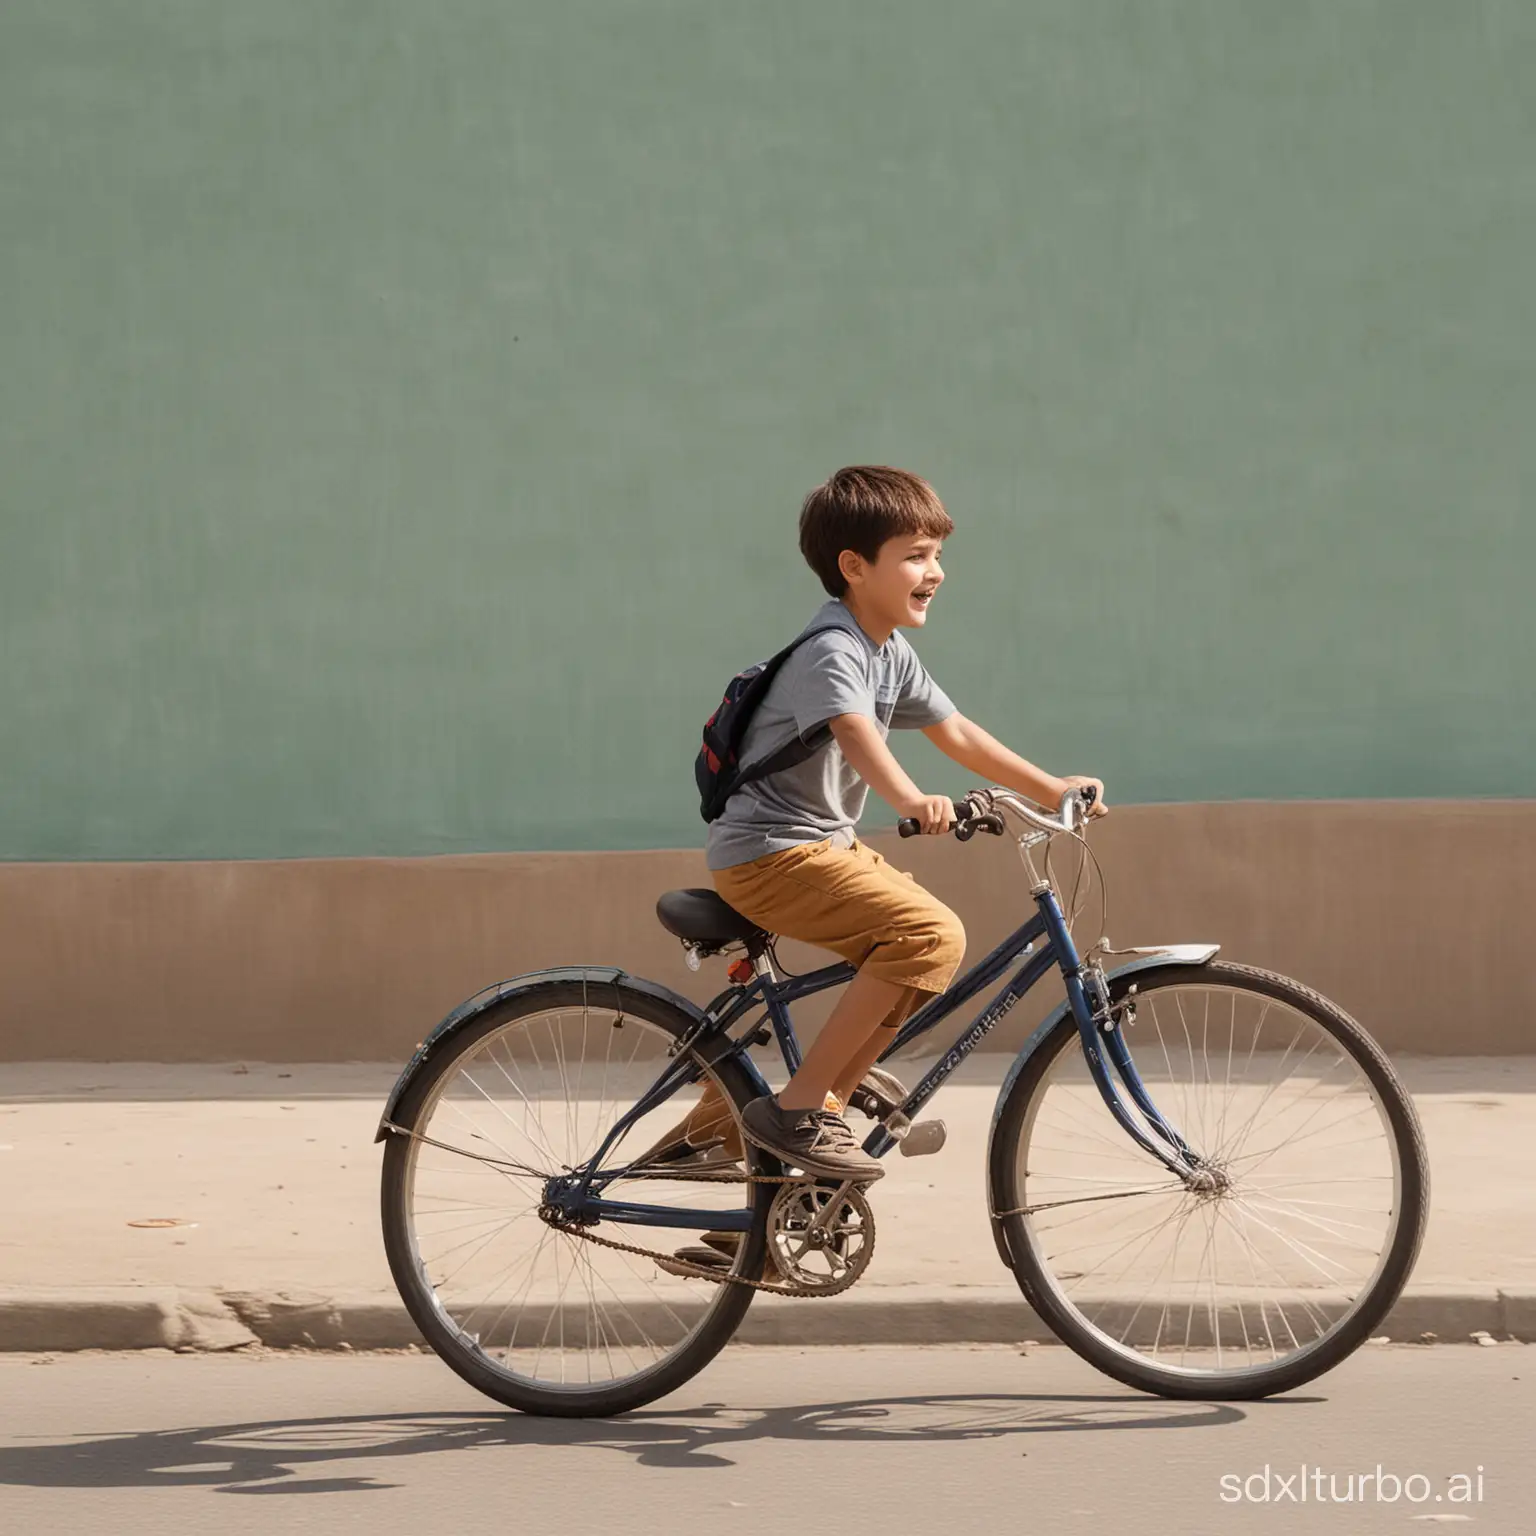 Young-Boy-Enjoying-a-Bike-Ride-in-Nature